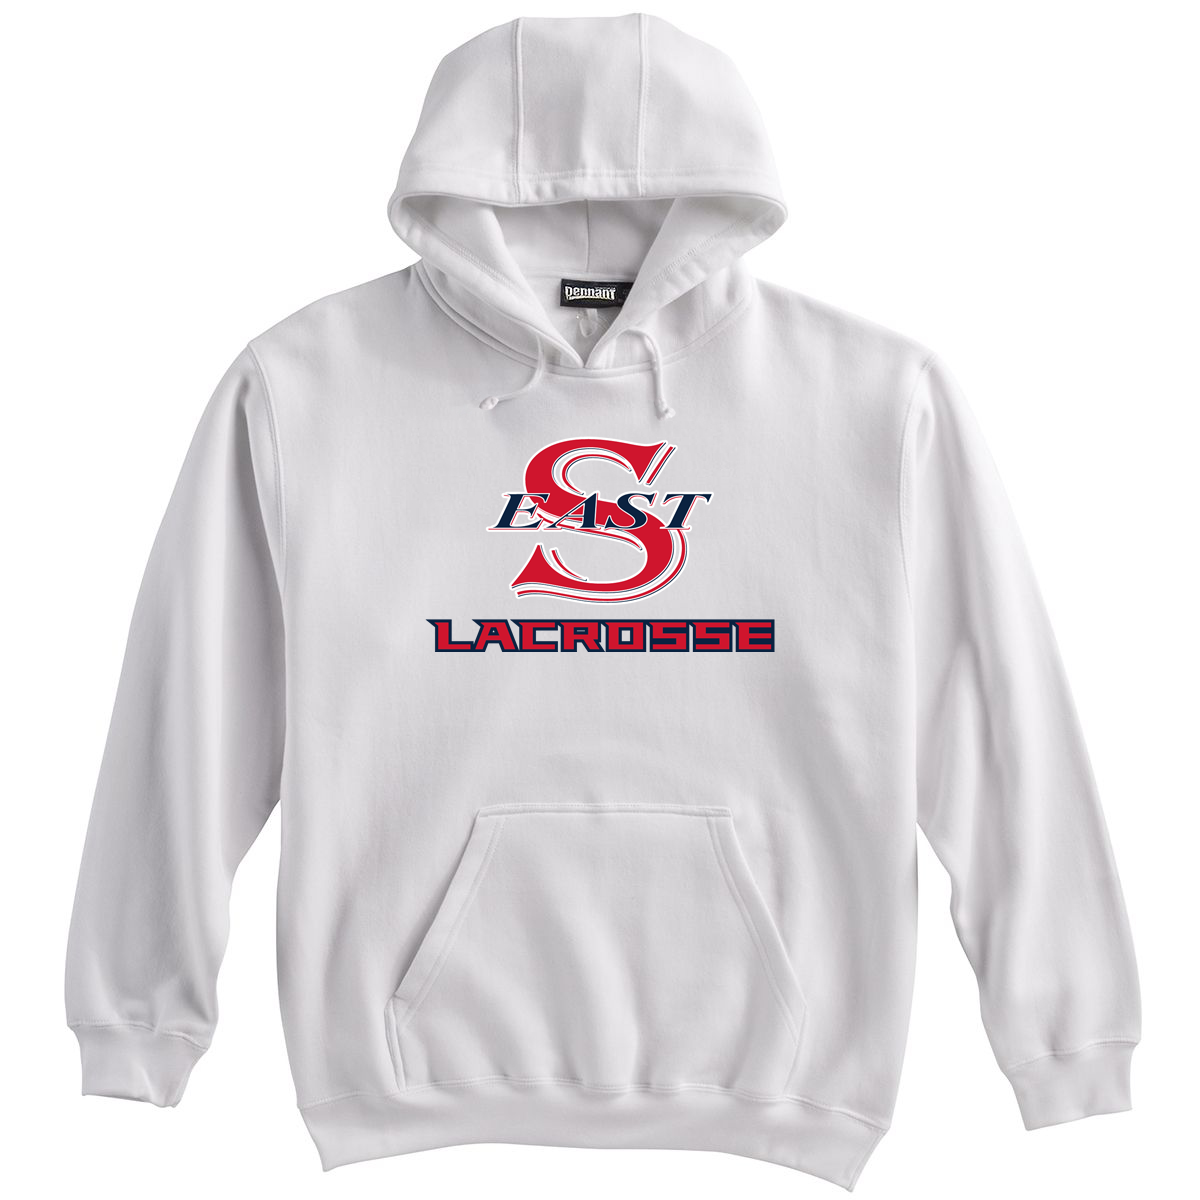 Smithtown East Lacrosse Sweatshirt